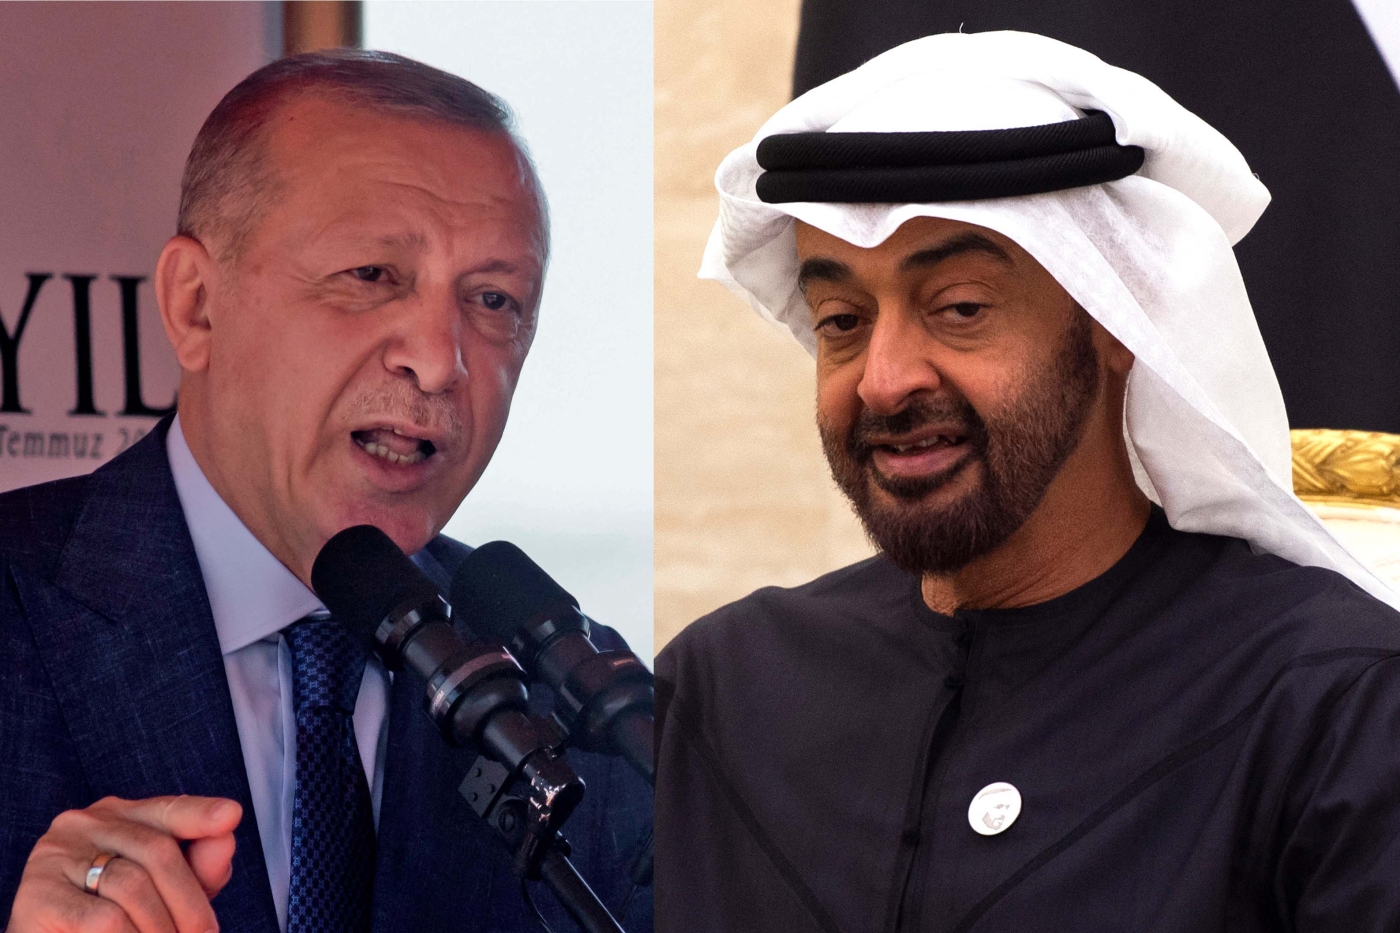 Le président turc Recep Tayyip Erdoğan et le prince héritier d’Abou Dabi Mohammed ben Zayed ont échangé leurs points de vue sur un certain nombre de questions (AFP)